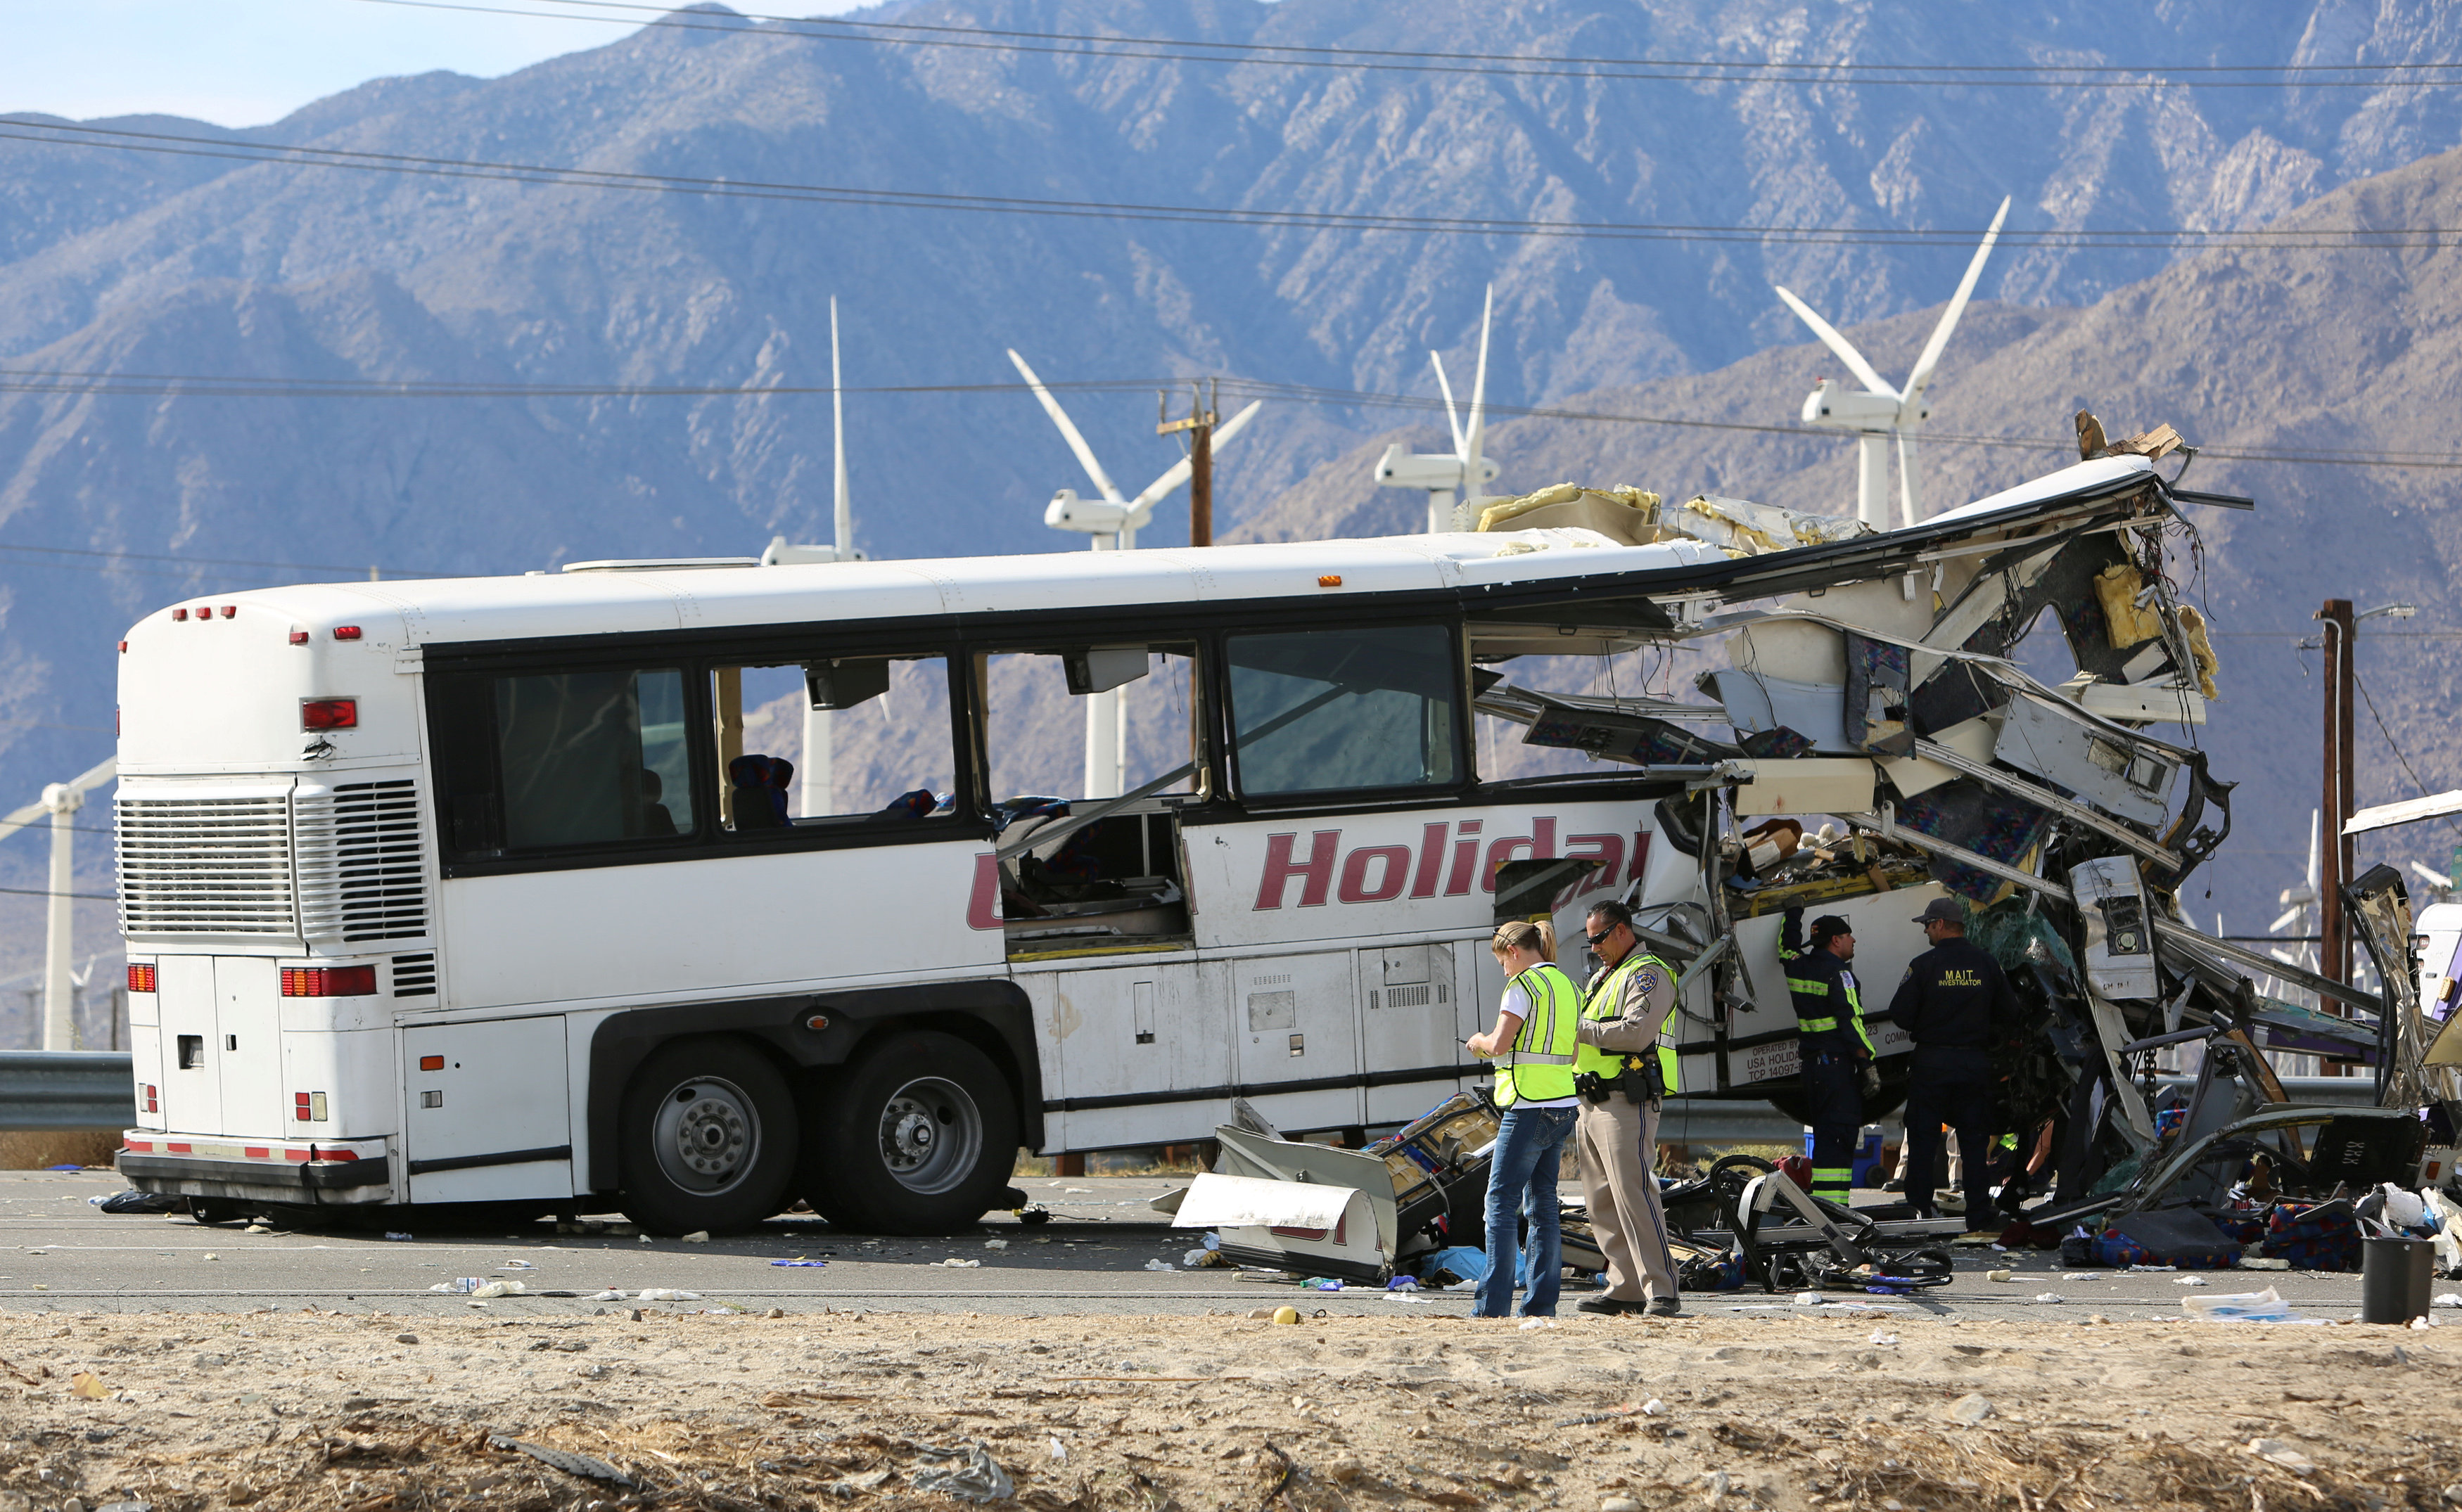 El autobús salió desde el Red Earth Casino en Salton City, California, y se dirigía hacia Los Angeles